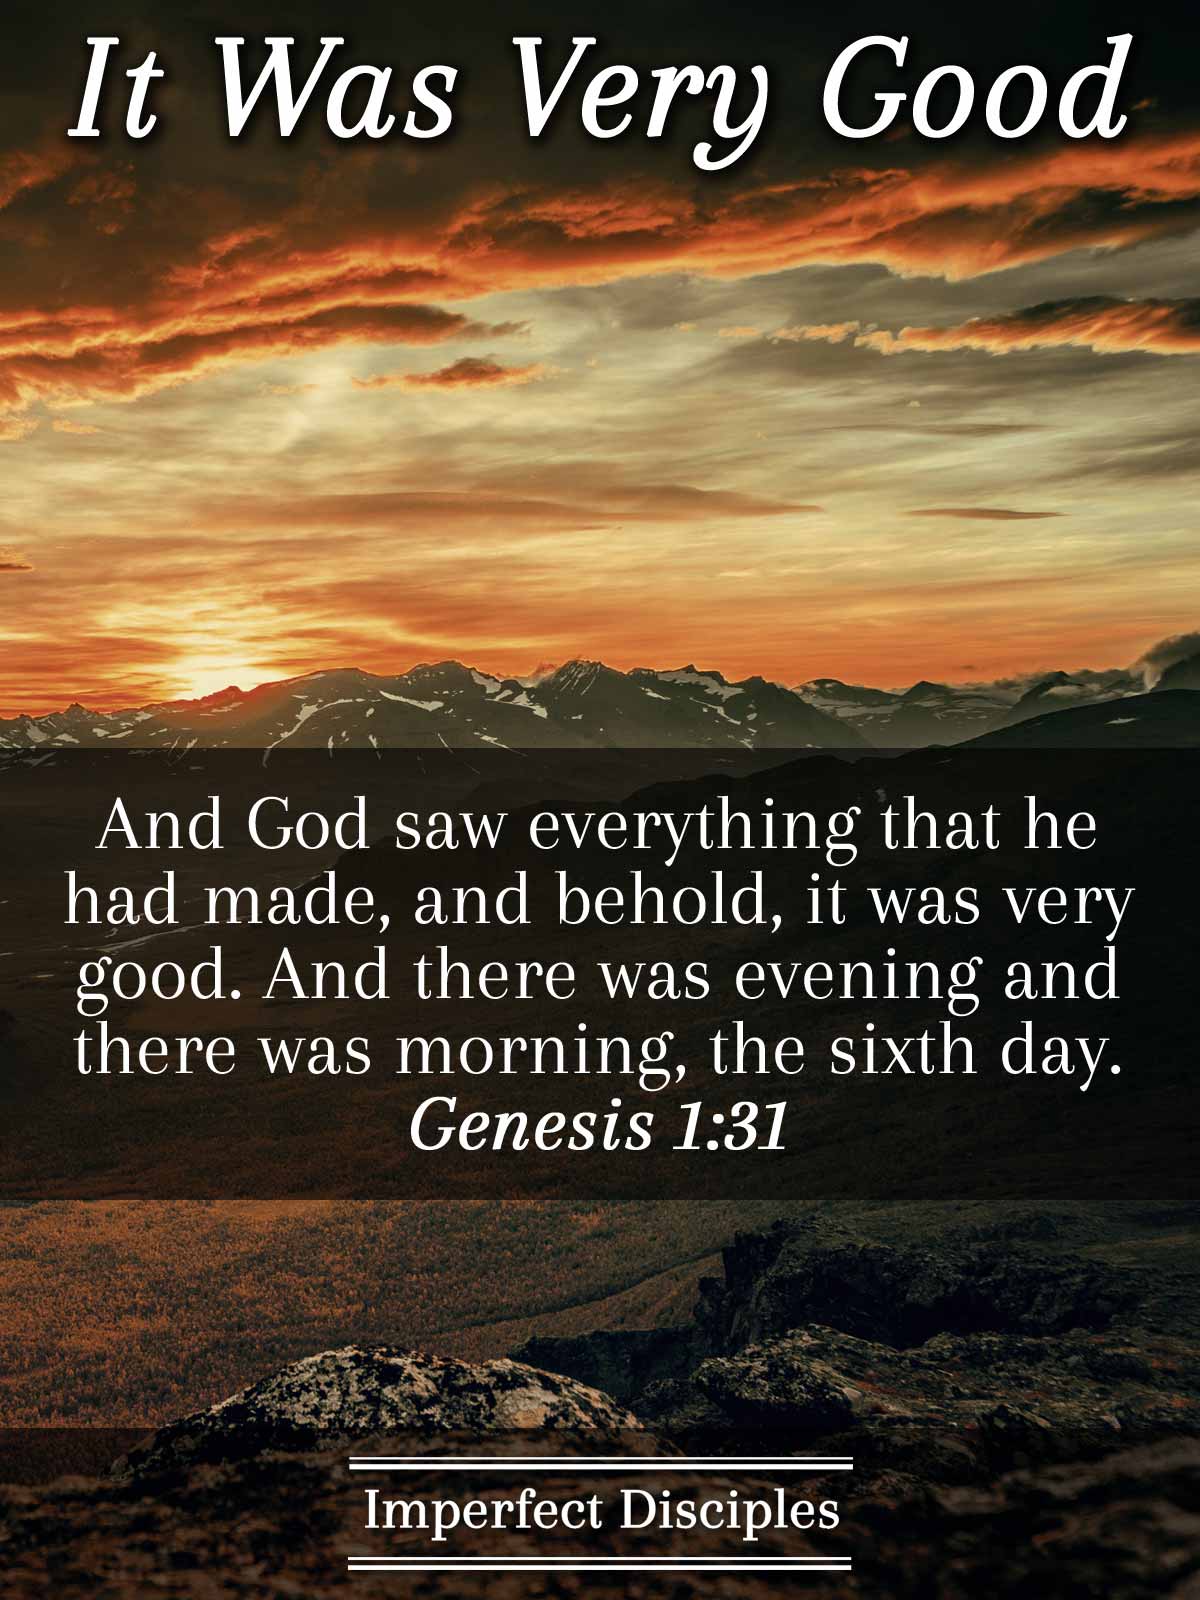 It was Very Good - Genesis 1:31 Scripture Memory Verse Song